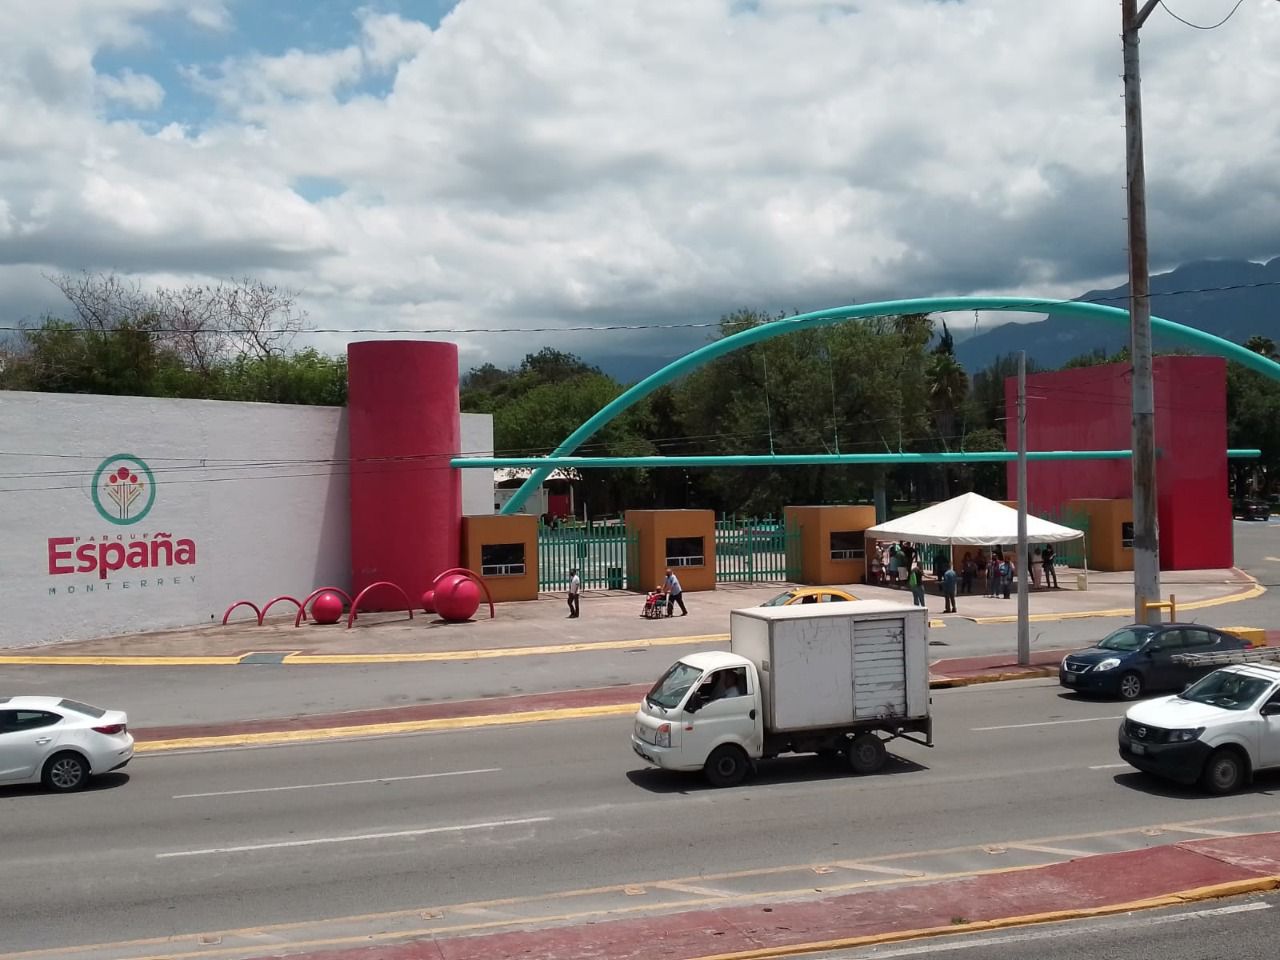 Parques públicos permanecerán cerrados “en su totalidad” por semáforo rojo  en Monterrey - Infobae